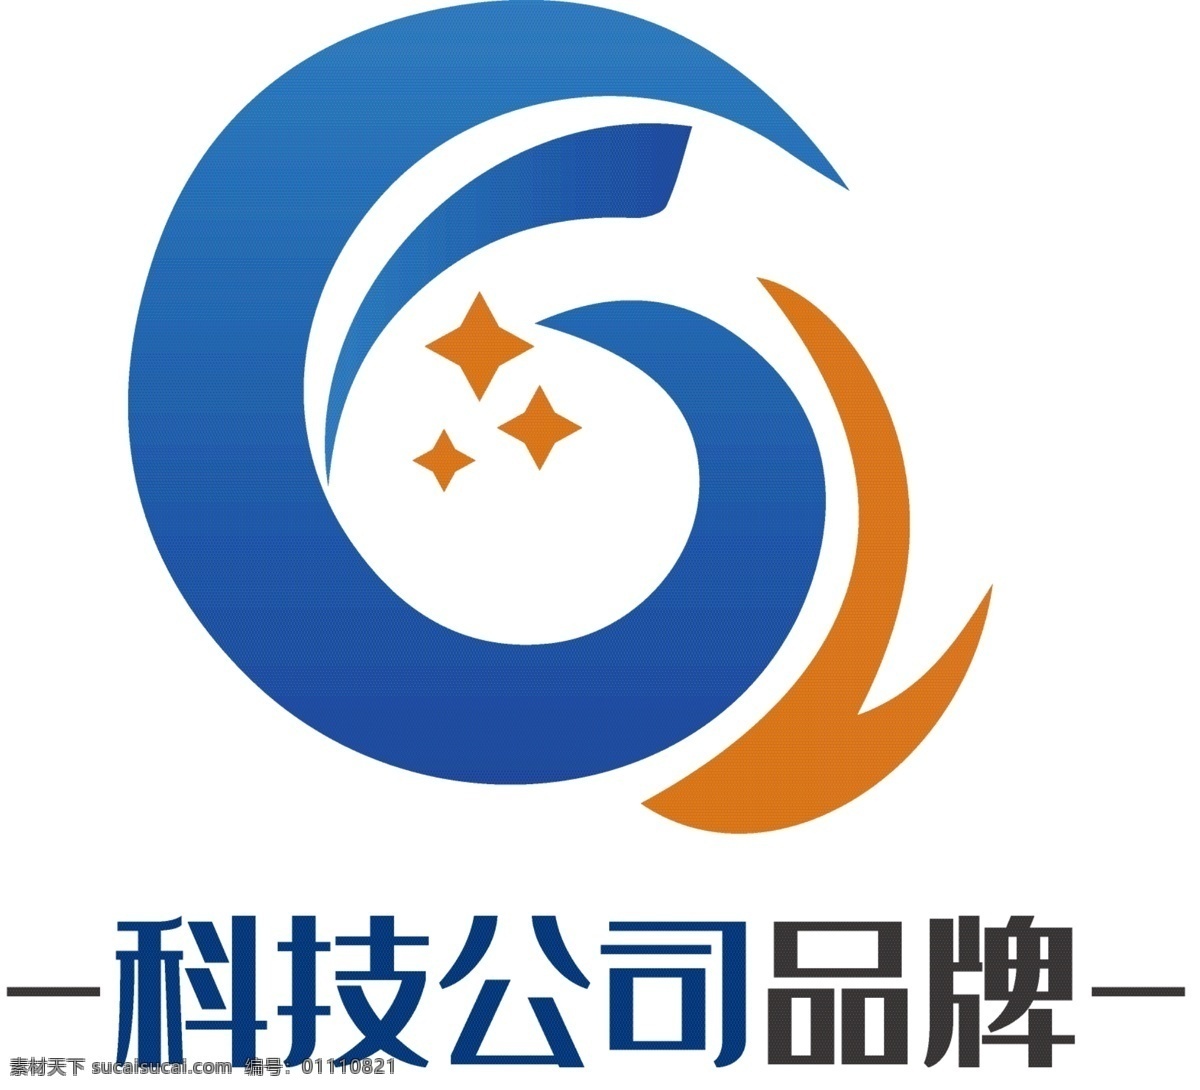 环保科技 生态 logo 标志 环保logo 蓝色渐变 环保公益 公益logo 生态科技 logo设计